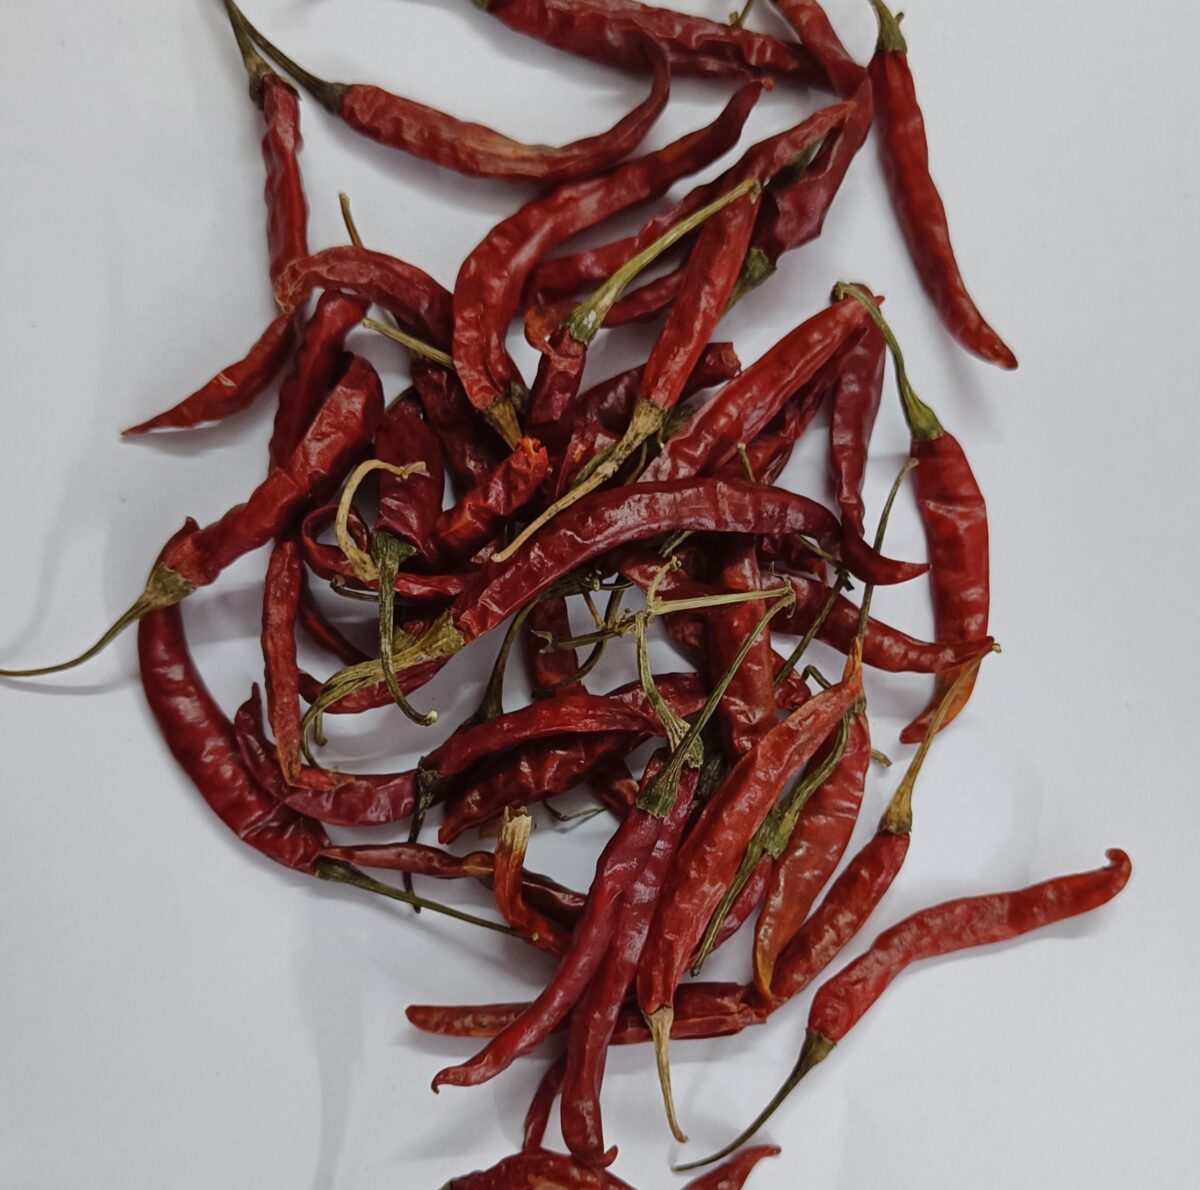 Red chilli Teja Best